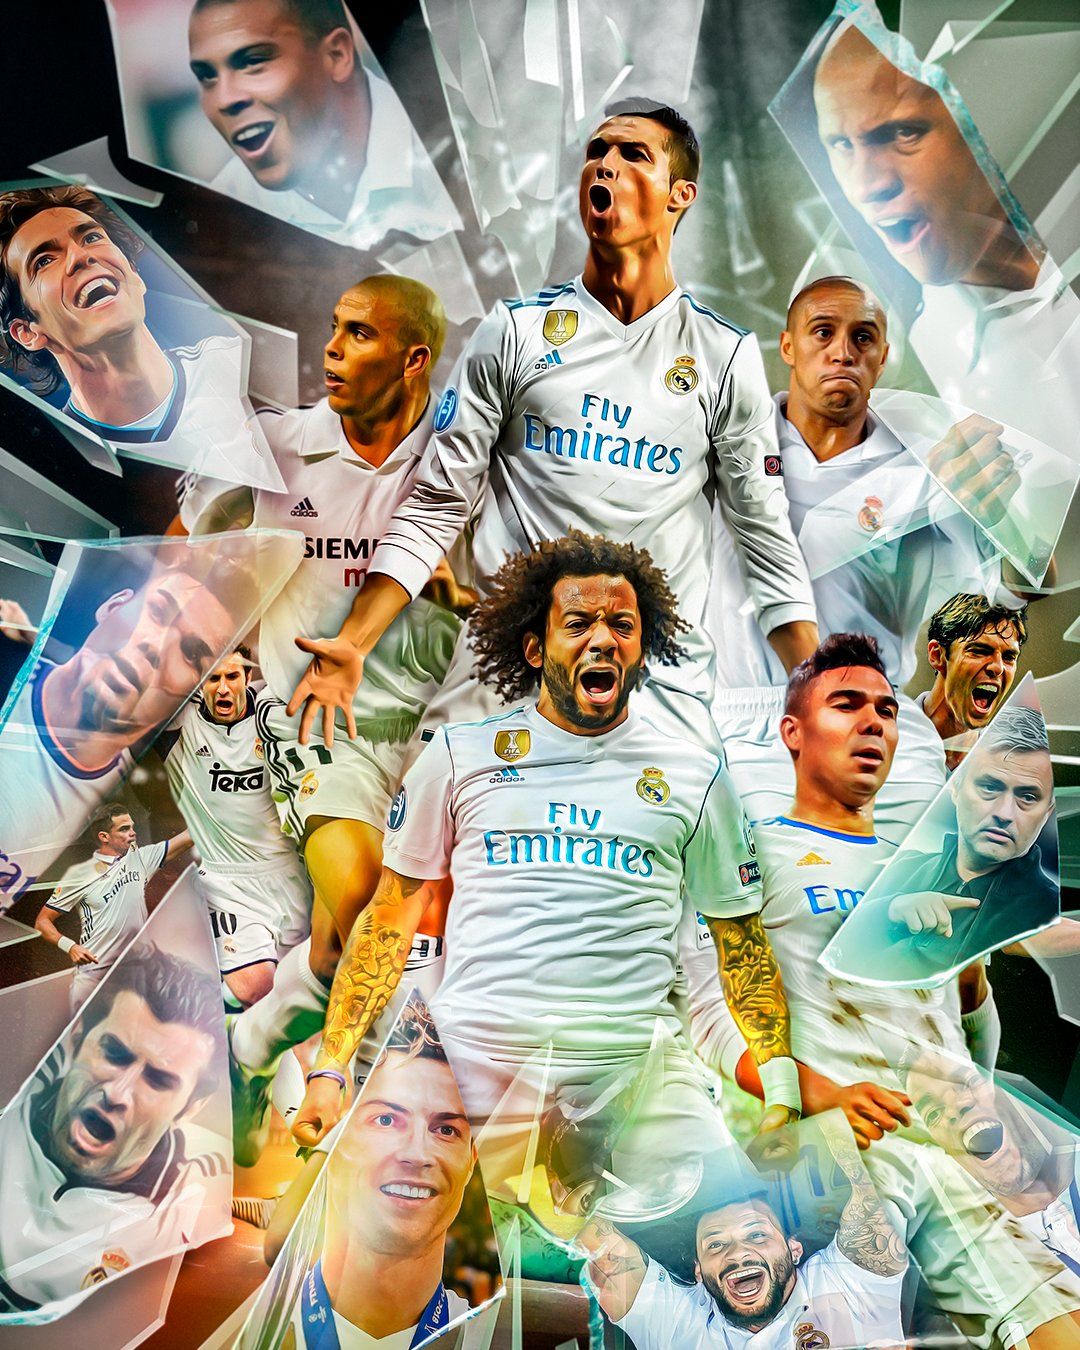 Real Madrid number 7 legends